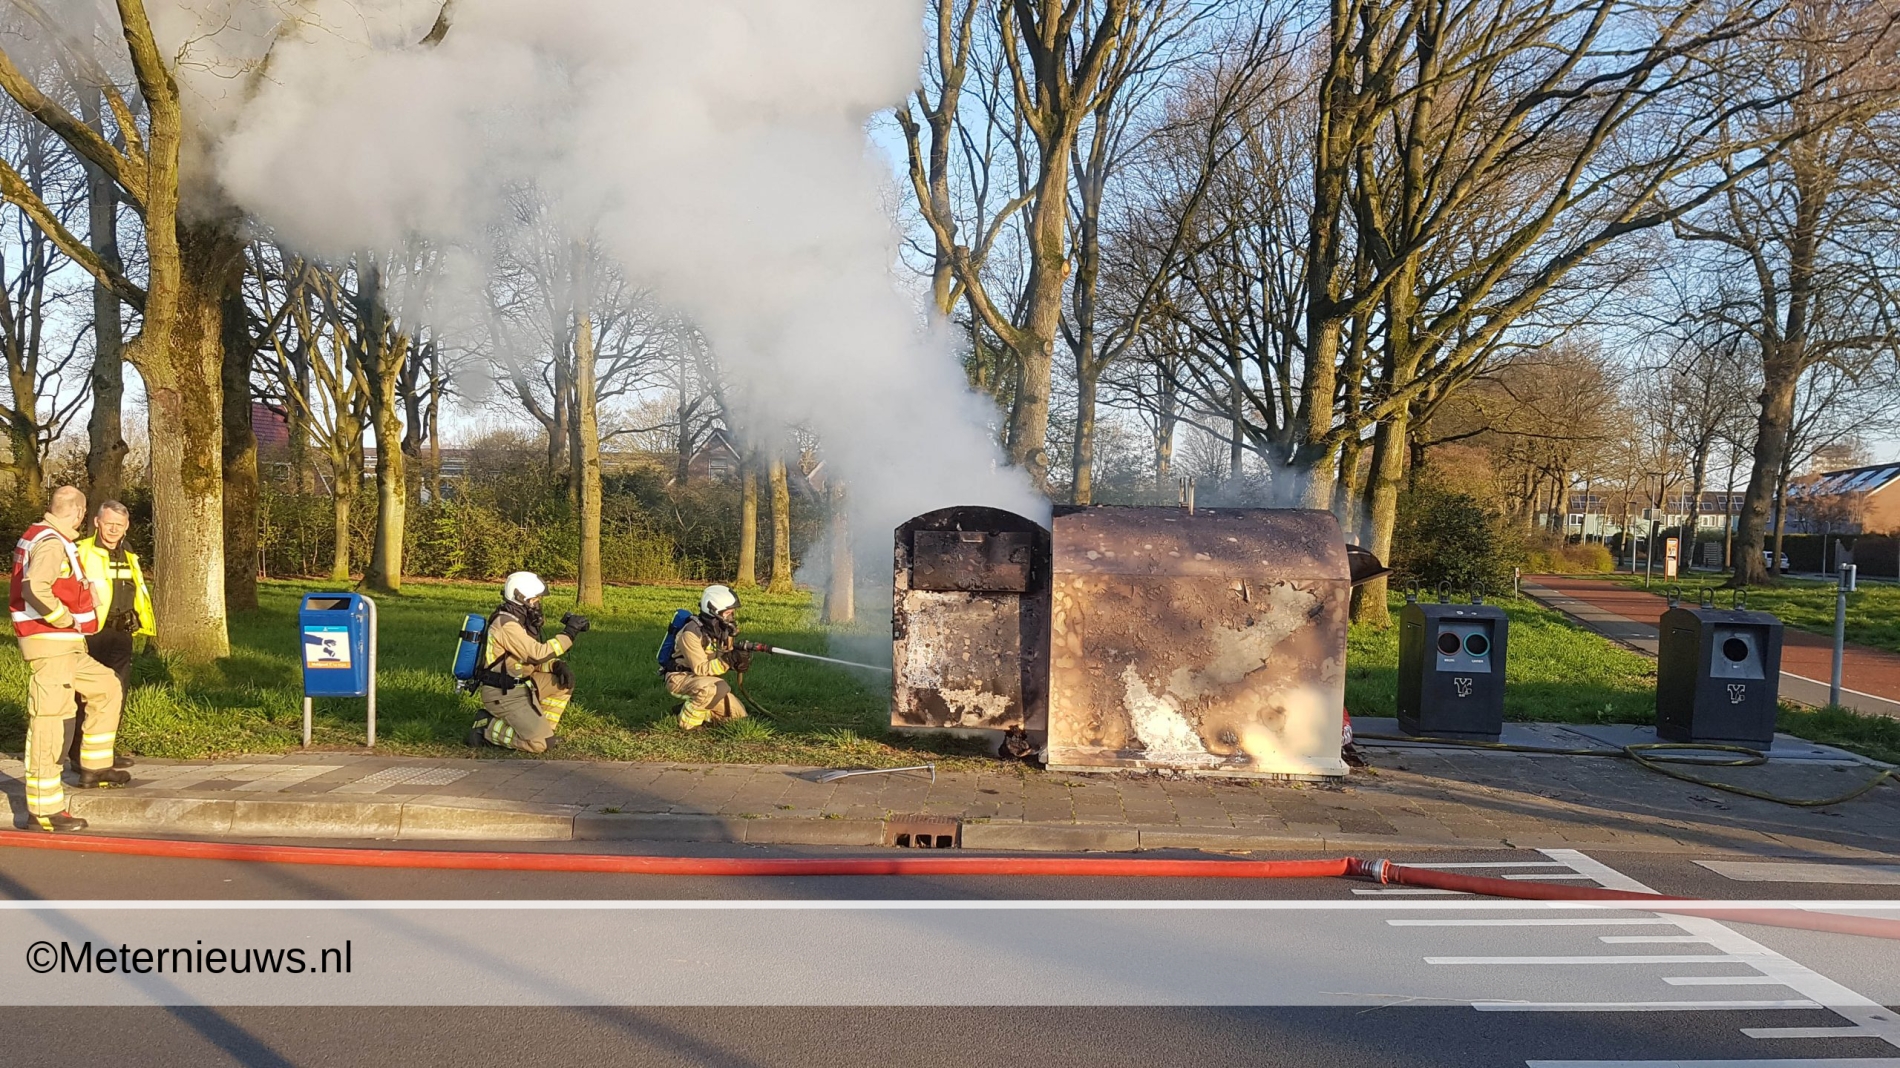 bom Rouwen Uitdrukkelijk Kleding container in de brand in Assen(Video) | Meternieuws.nl